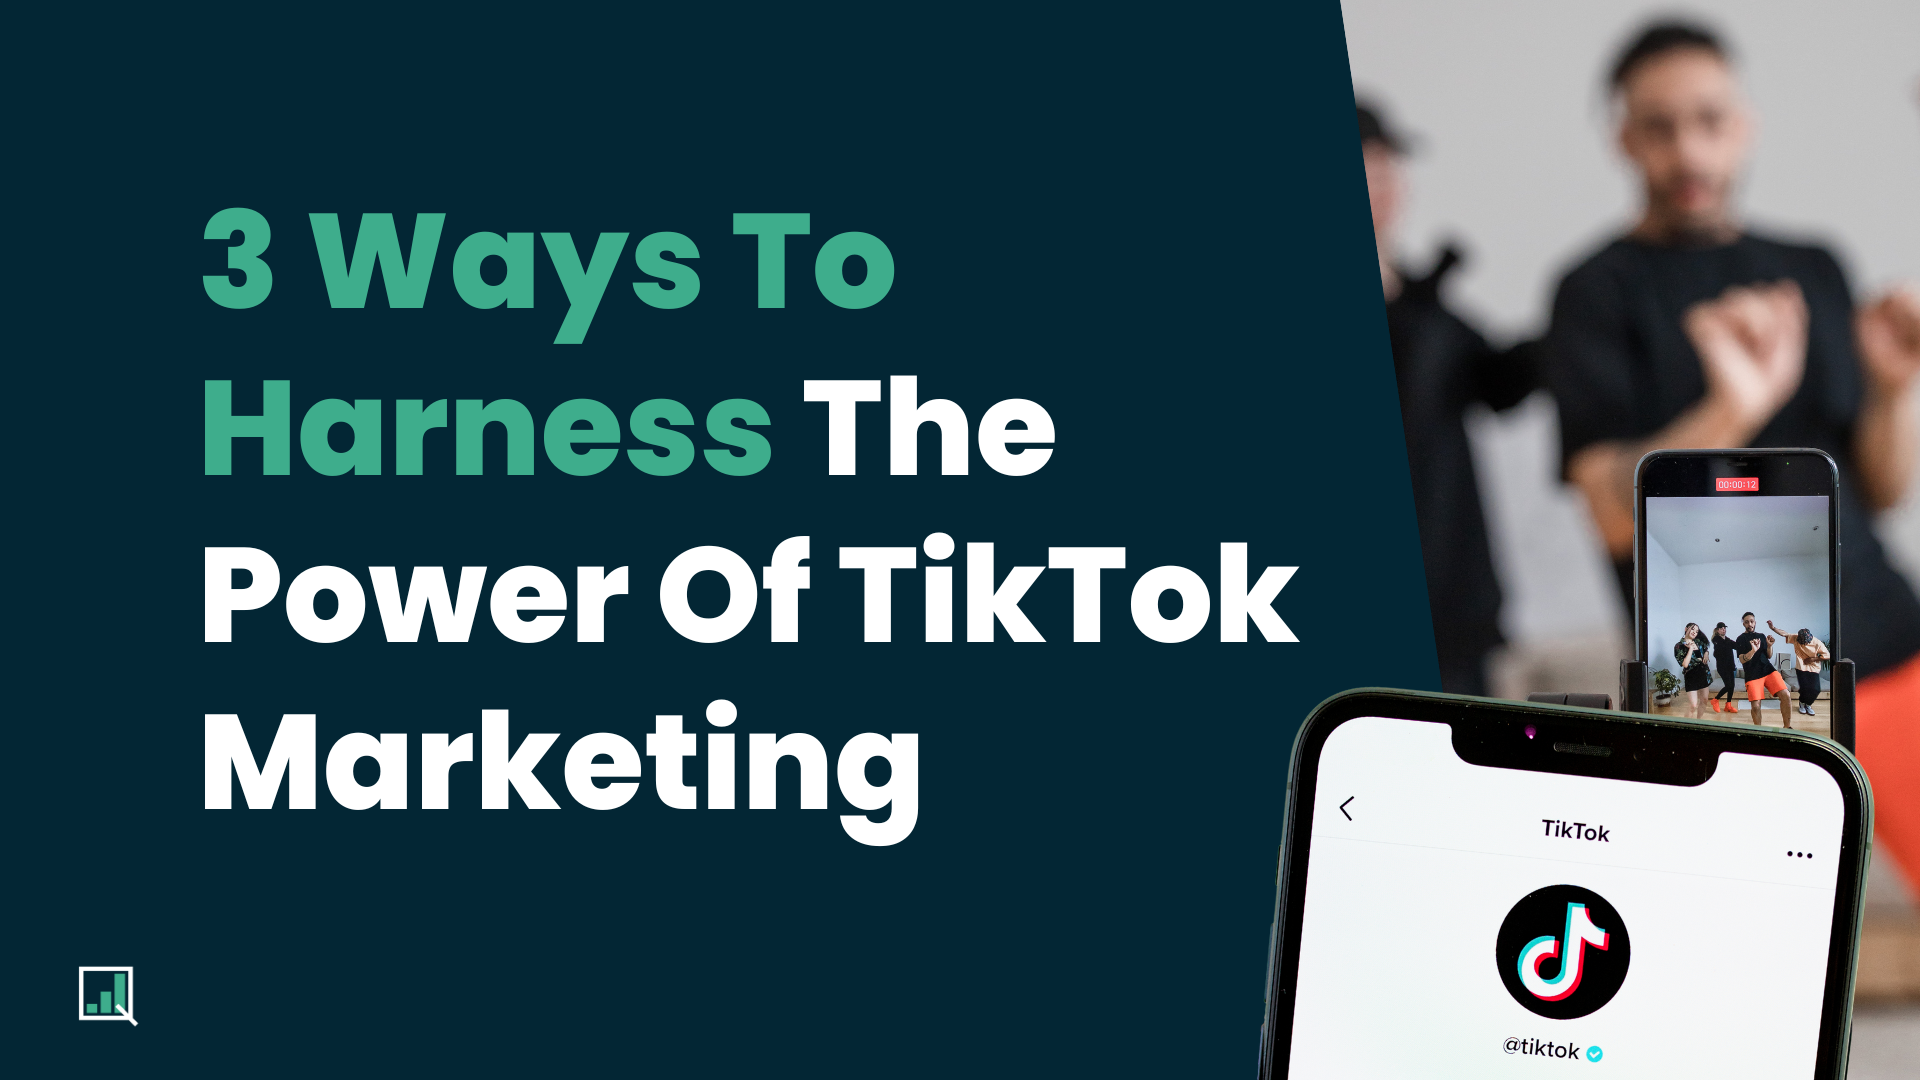 3 Ways To Harness The Power Of TikTok Marketing